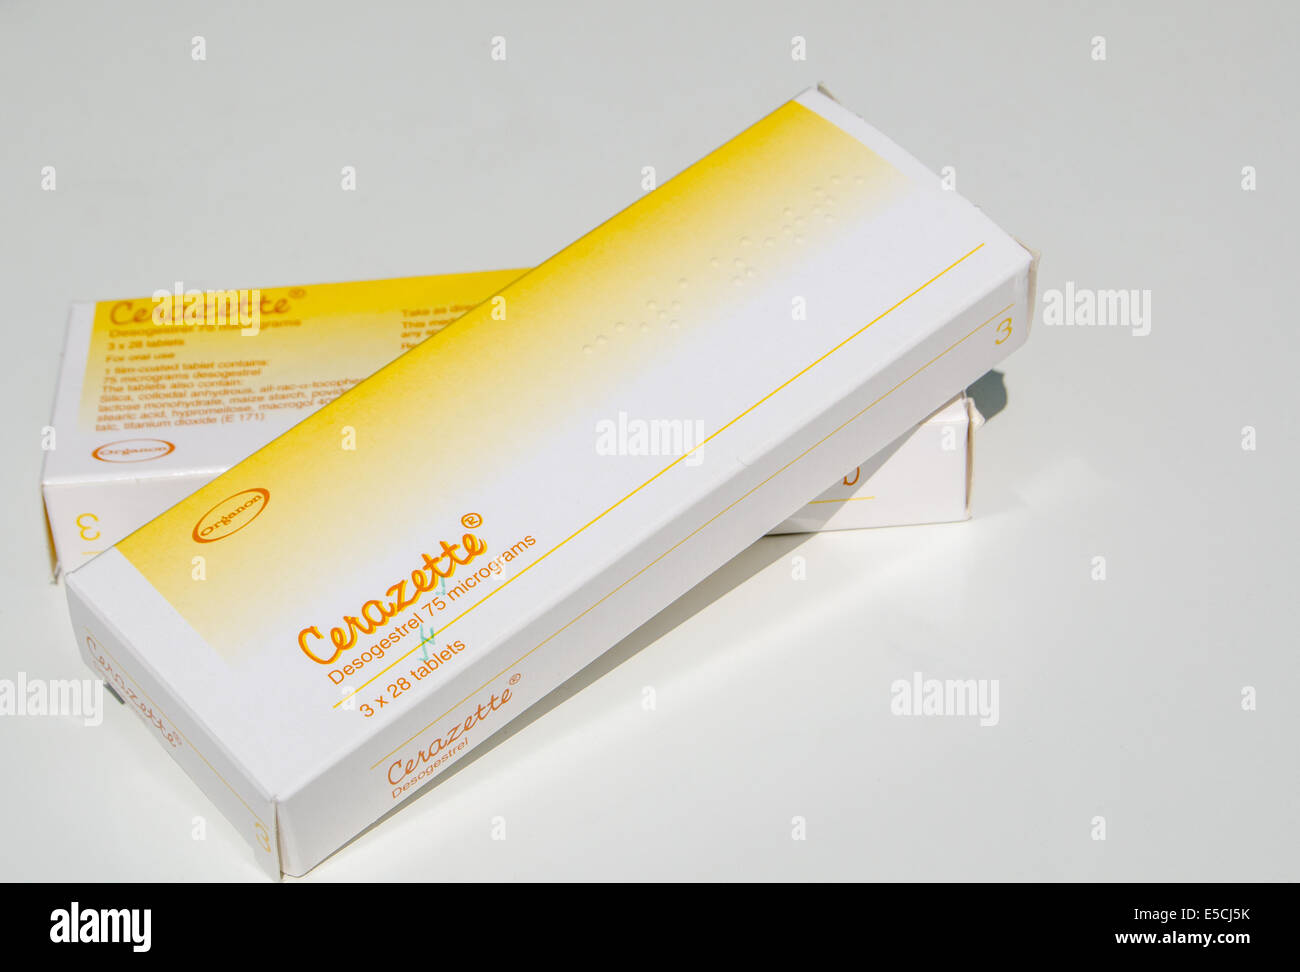 BASINGSTOKE, Reino Unido, 1 de junio de 2014: Dos paquetes de píldoras anticonceptivas Cerazette sobre un fondo blanco. Fabricado por Merck Sharp Foto de stock